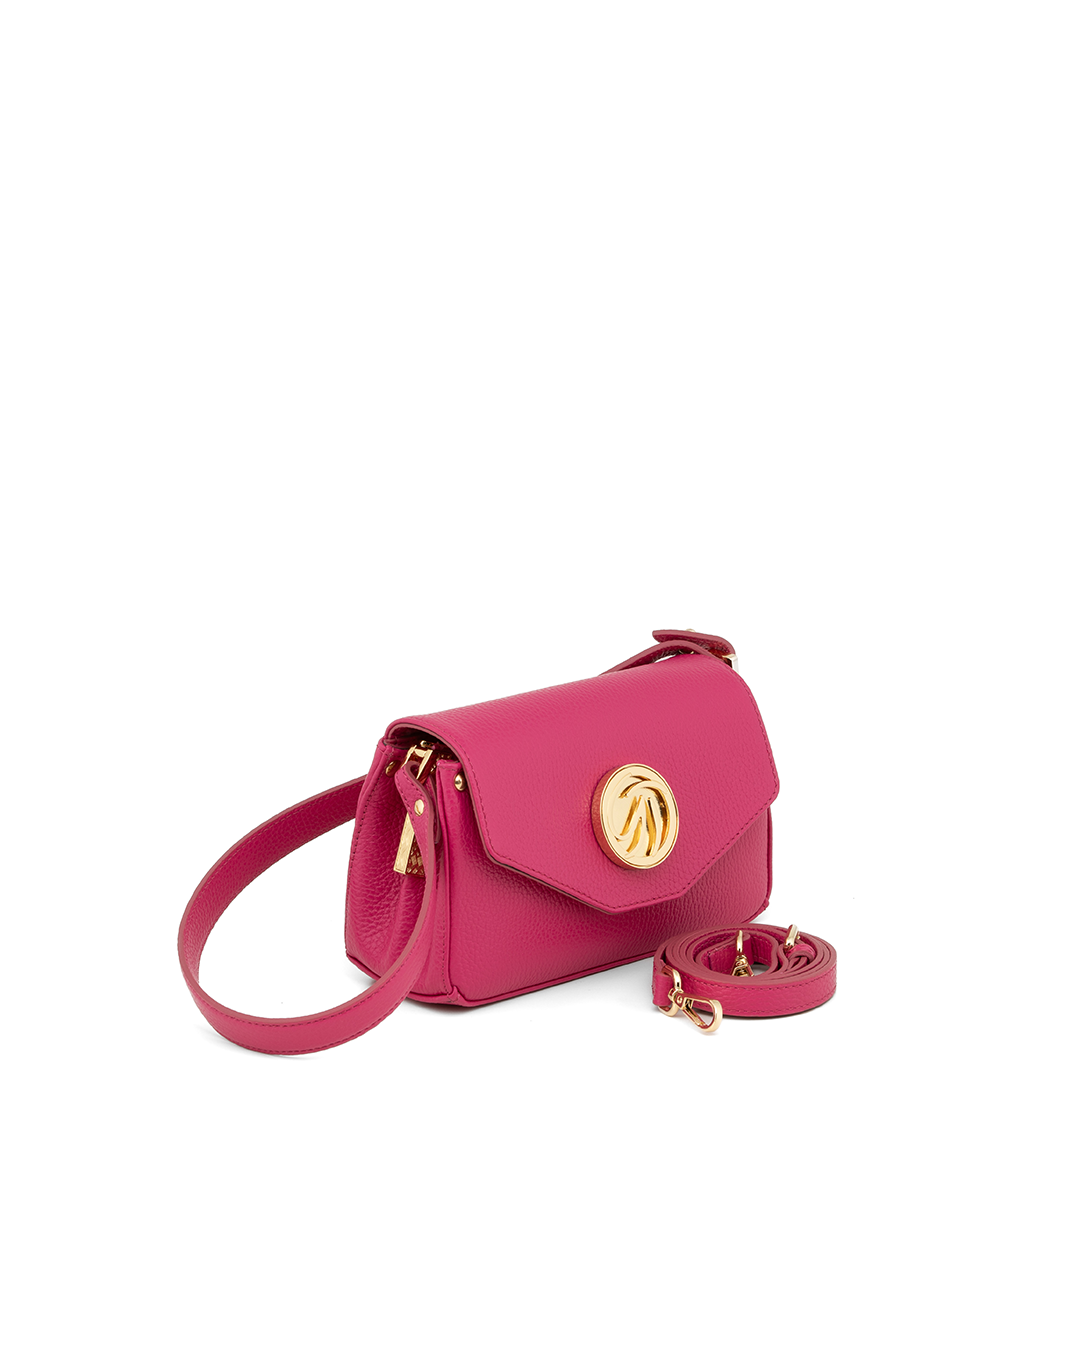 Gilda Tonelli - Baguette handbag